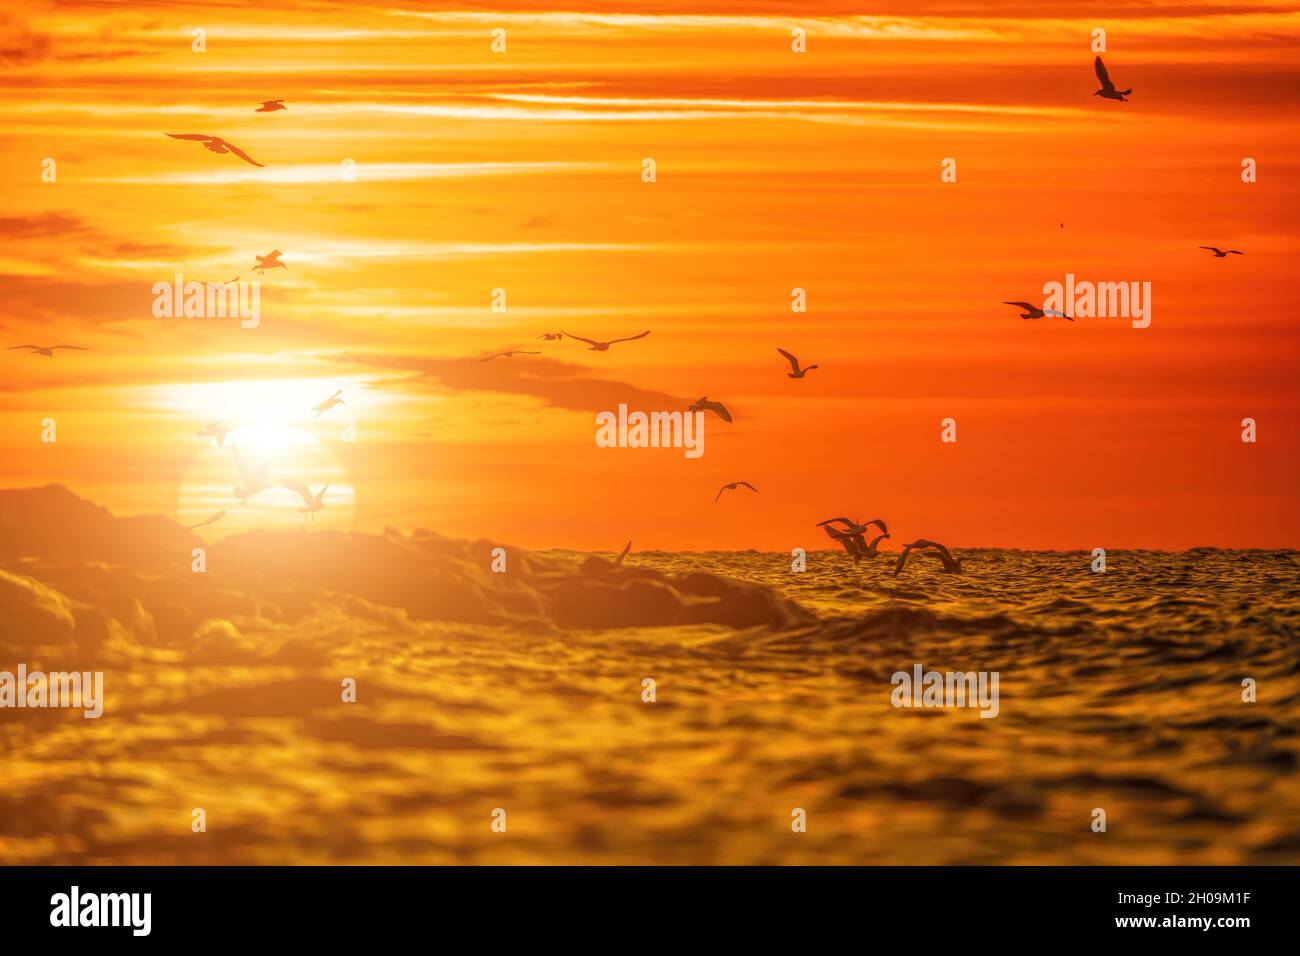 Un rebaño de gaviotas vuelan y pescan en el mar. Cálido cielo de puesta de sol sobre el océano, resplandor del sol. Siluetas de gaviotas volando a cámara lenta lejos del Foto de stock